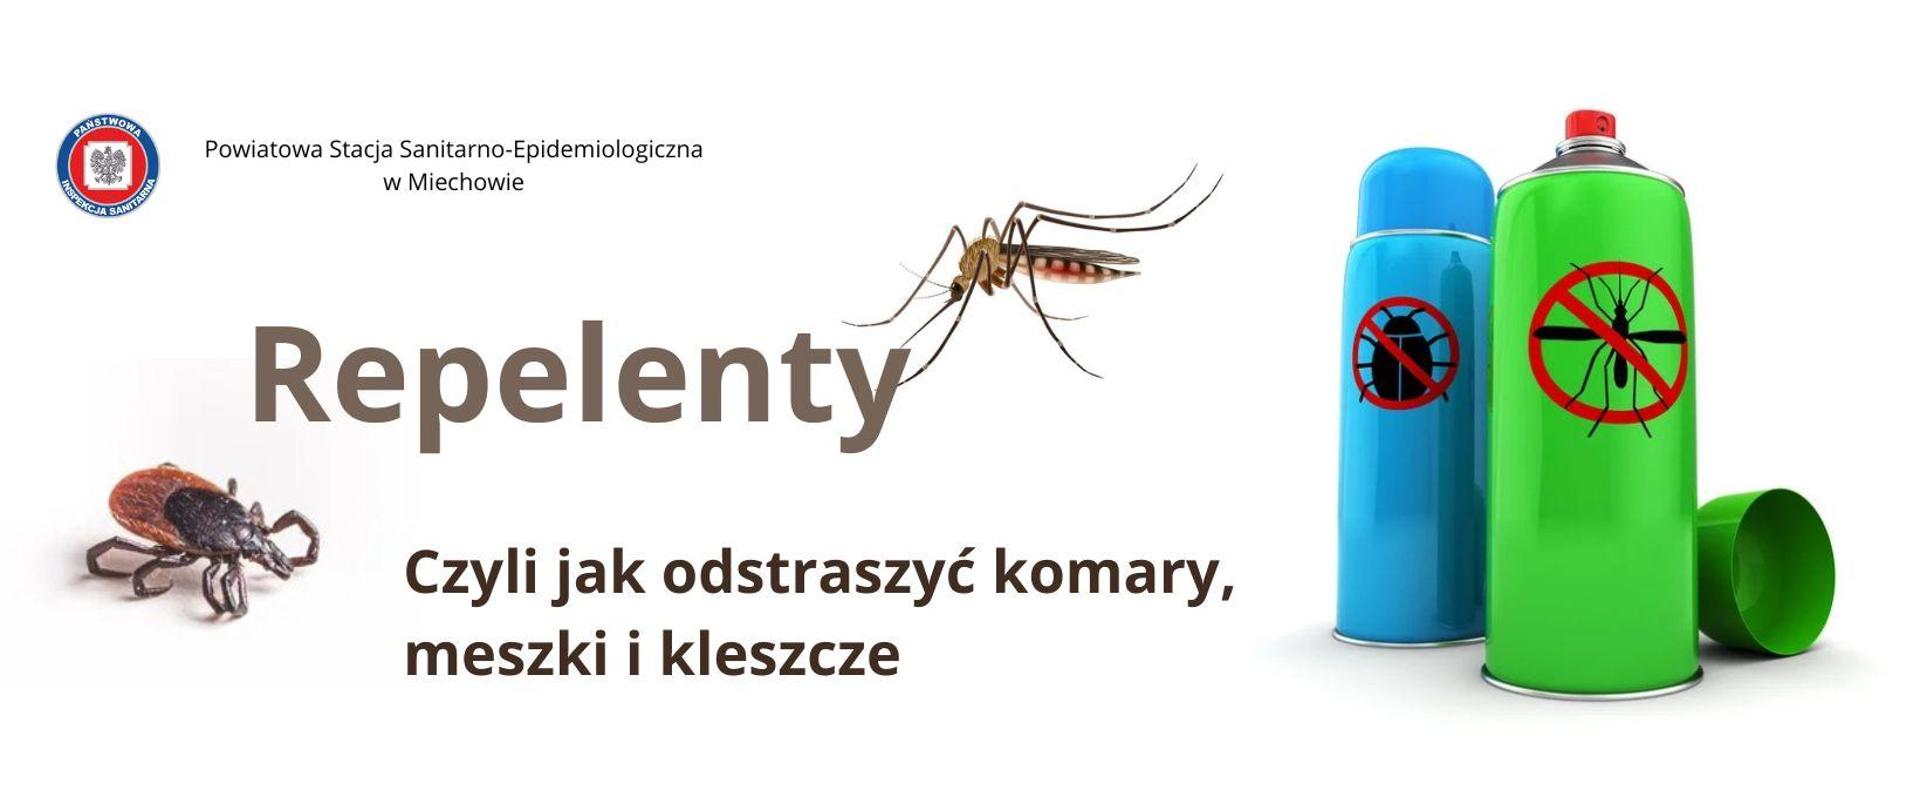 Na biały tle widnieje napis Repelenty Czyli jak odstraszyć komary meszki i kleszcze, zdjęcie komara oraz kleszcza a także środków na owady w postaci aerozolu.